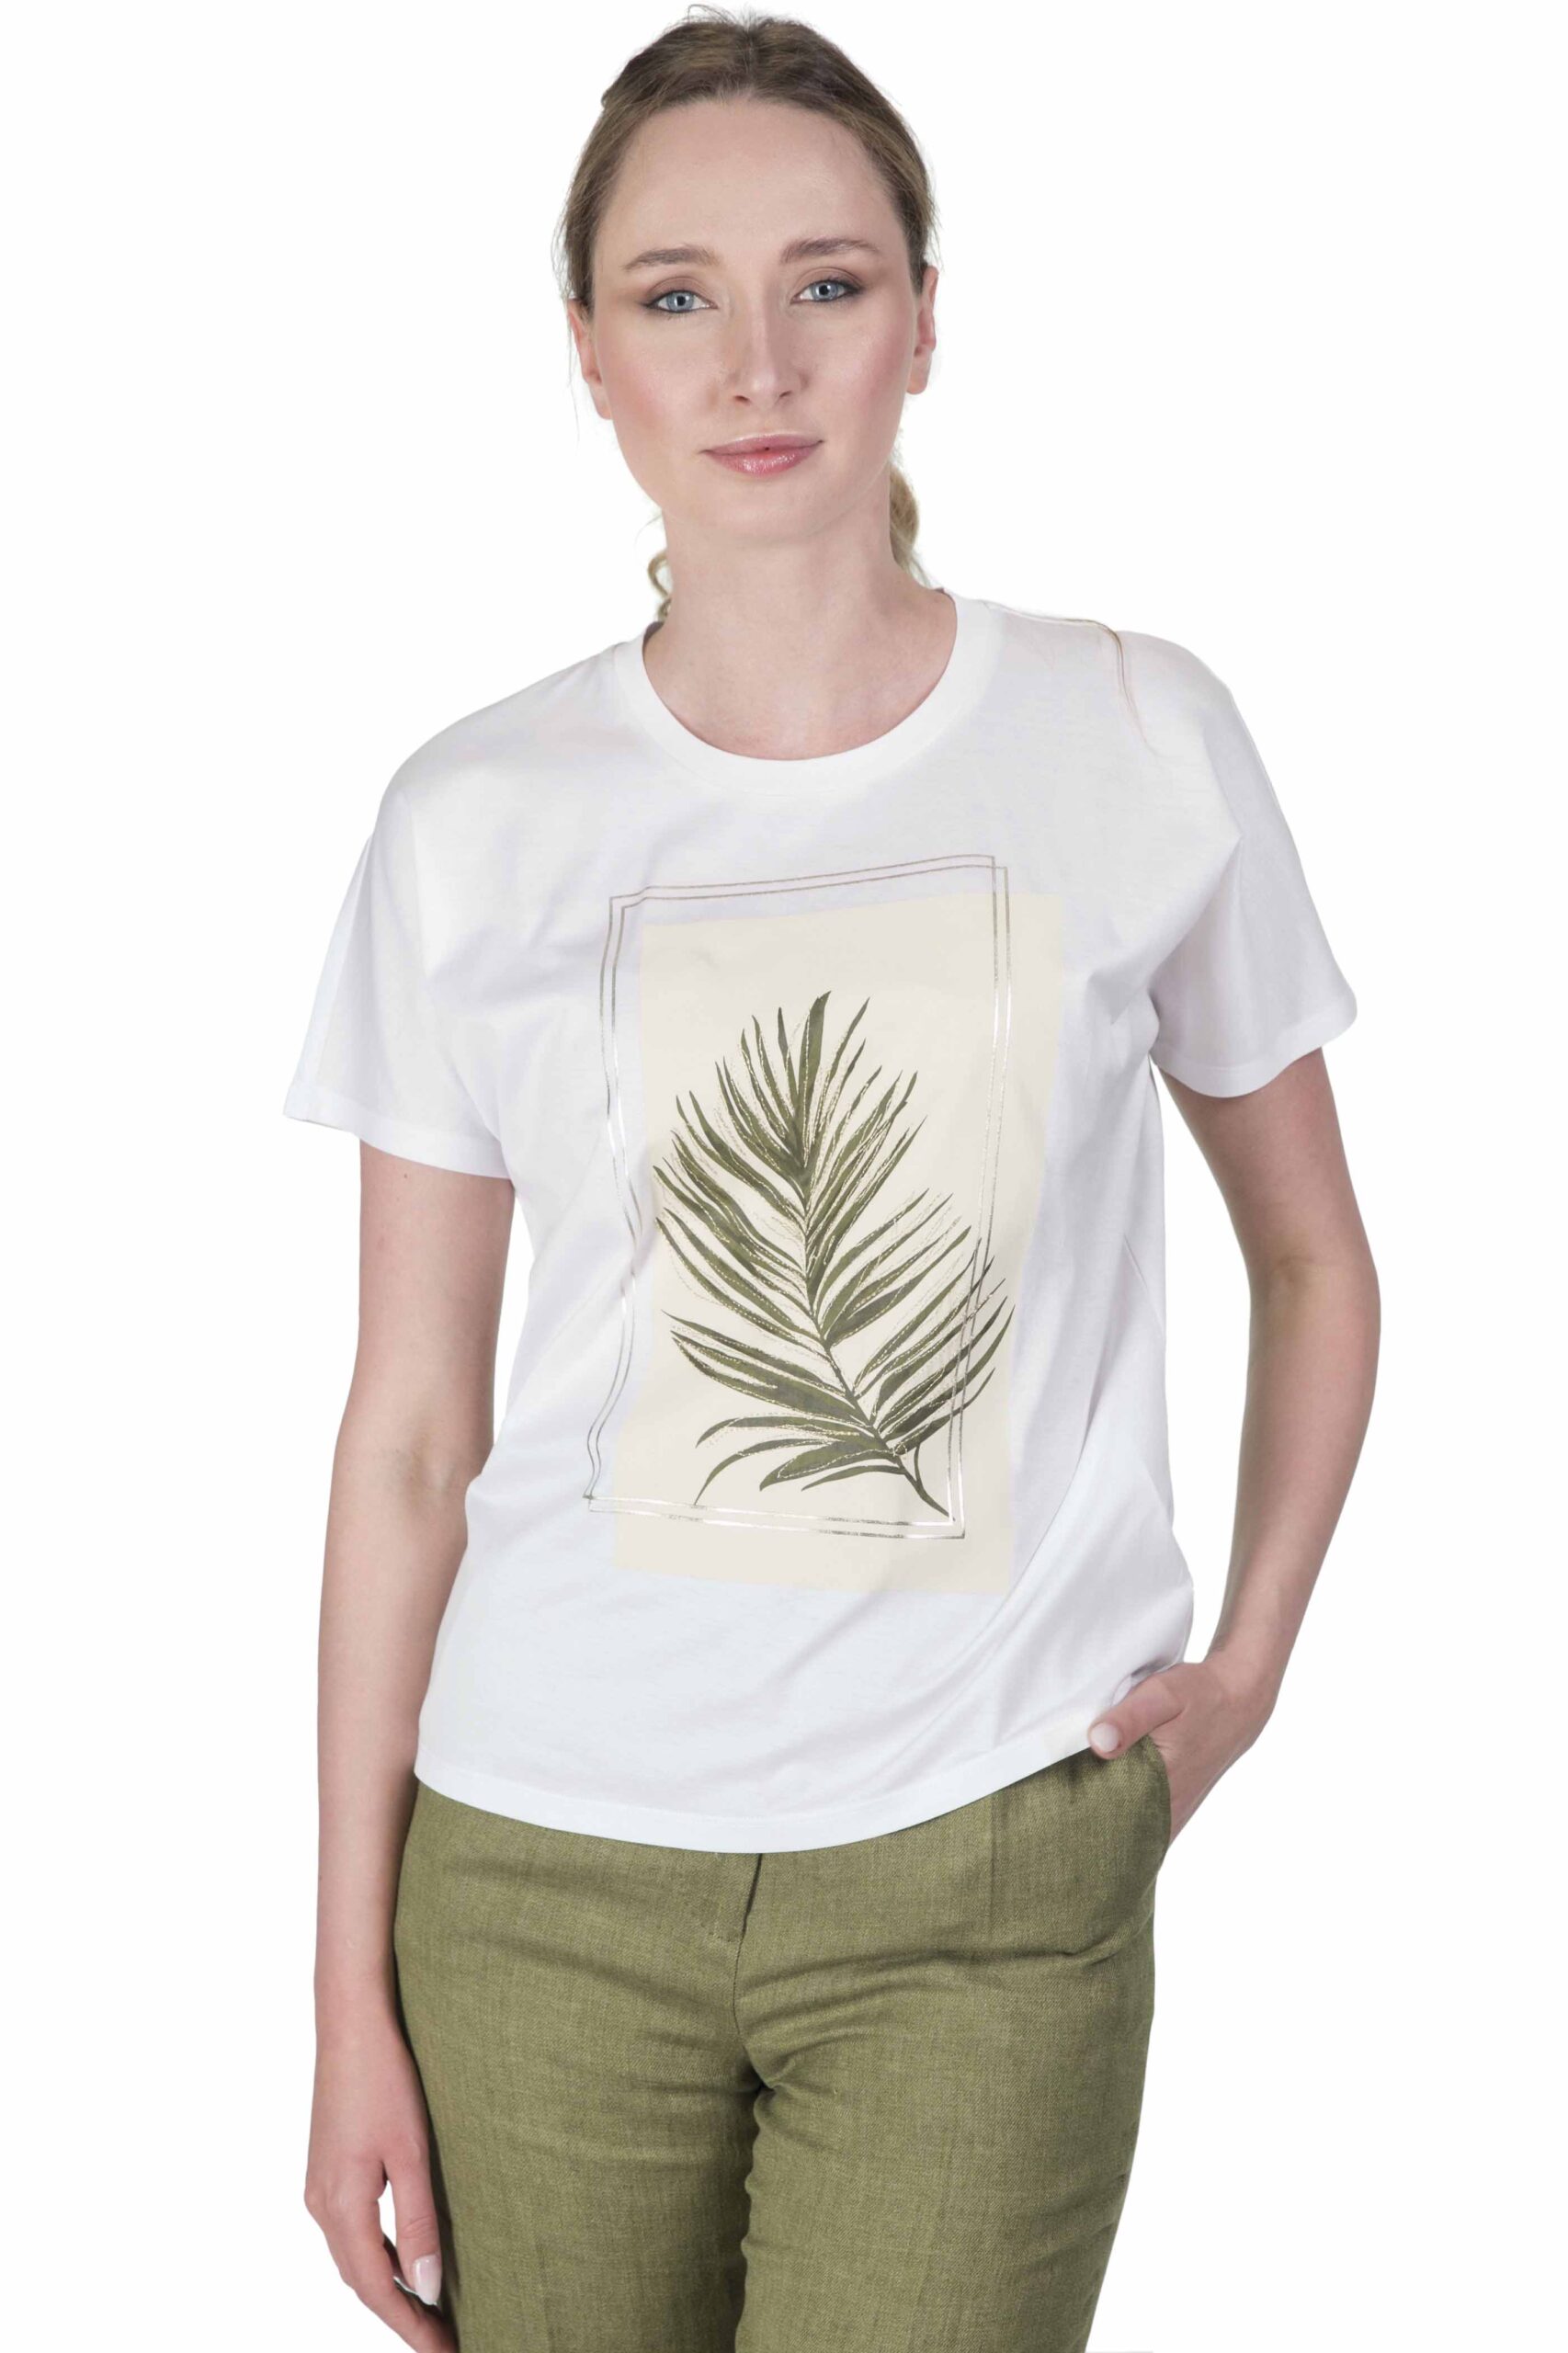 MAX MARA STUDIO T-shirt  in jersey di cotone ABBONO variante 004  colore Bianco ottico con stampa felce